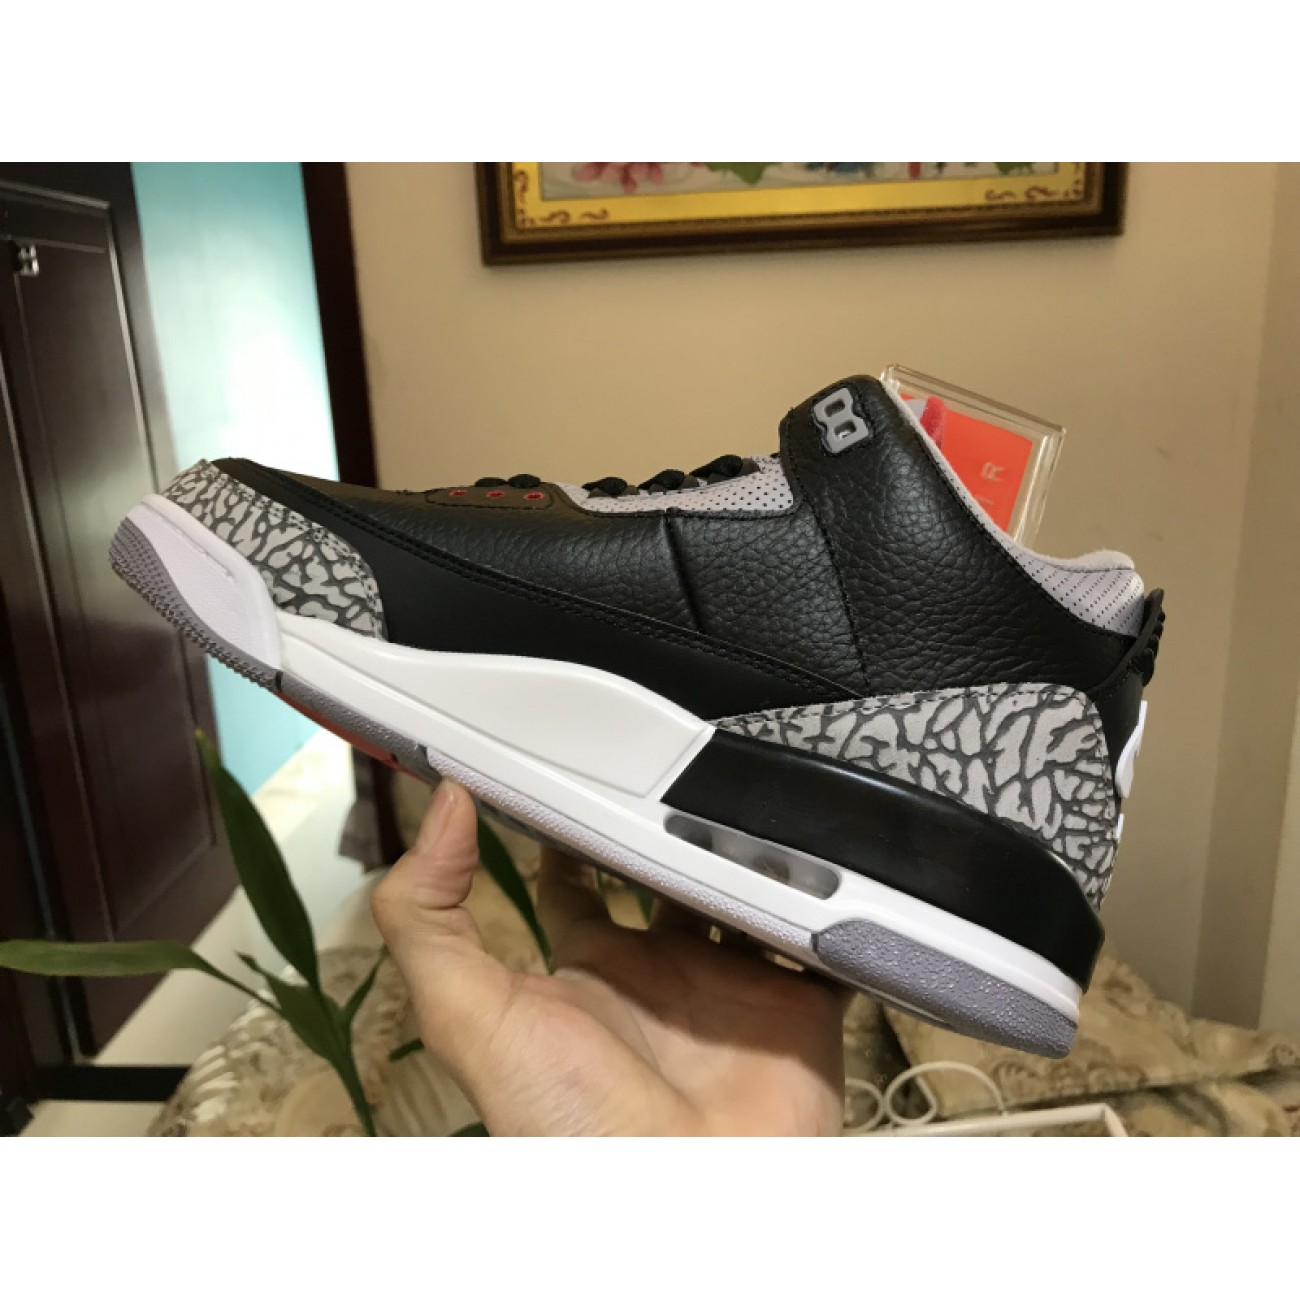 Air Jordan 3 "Black Cement" 854262-001